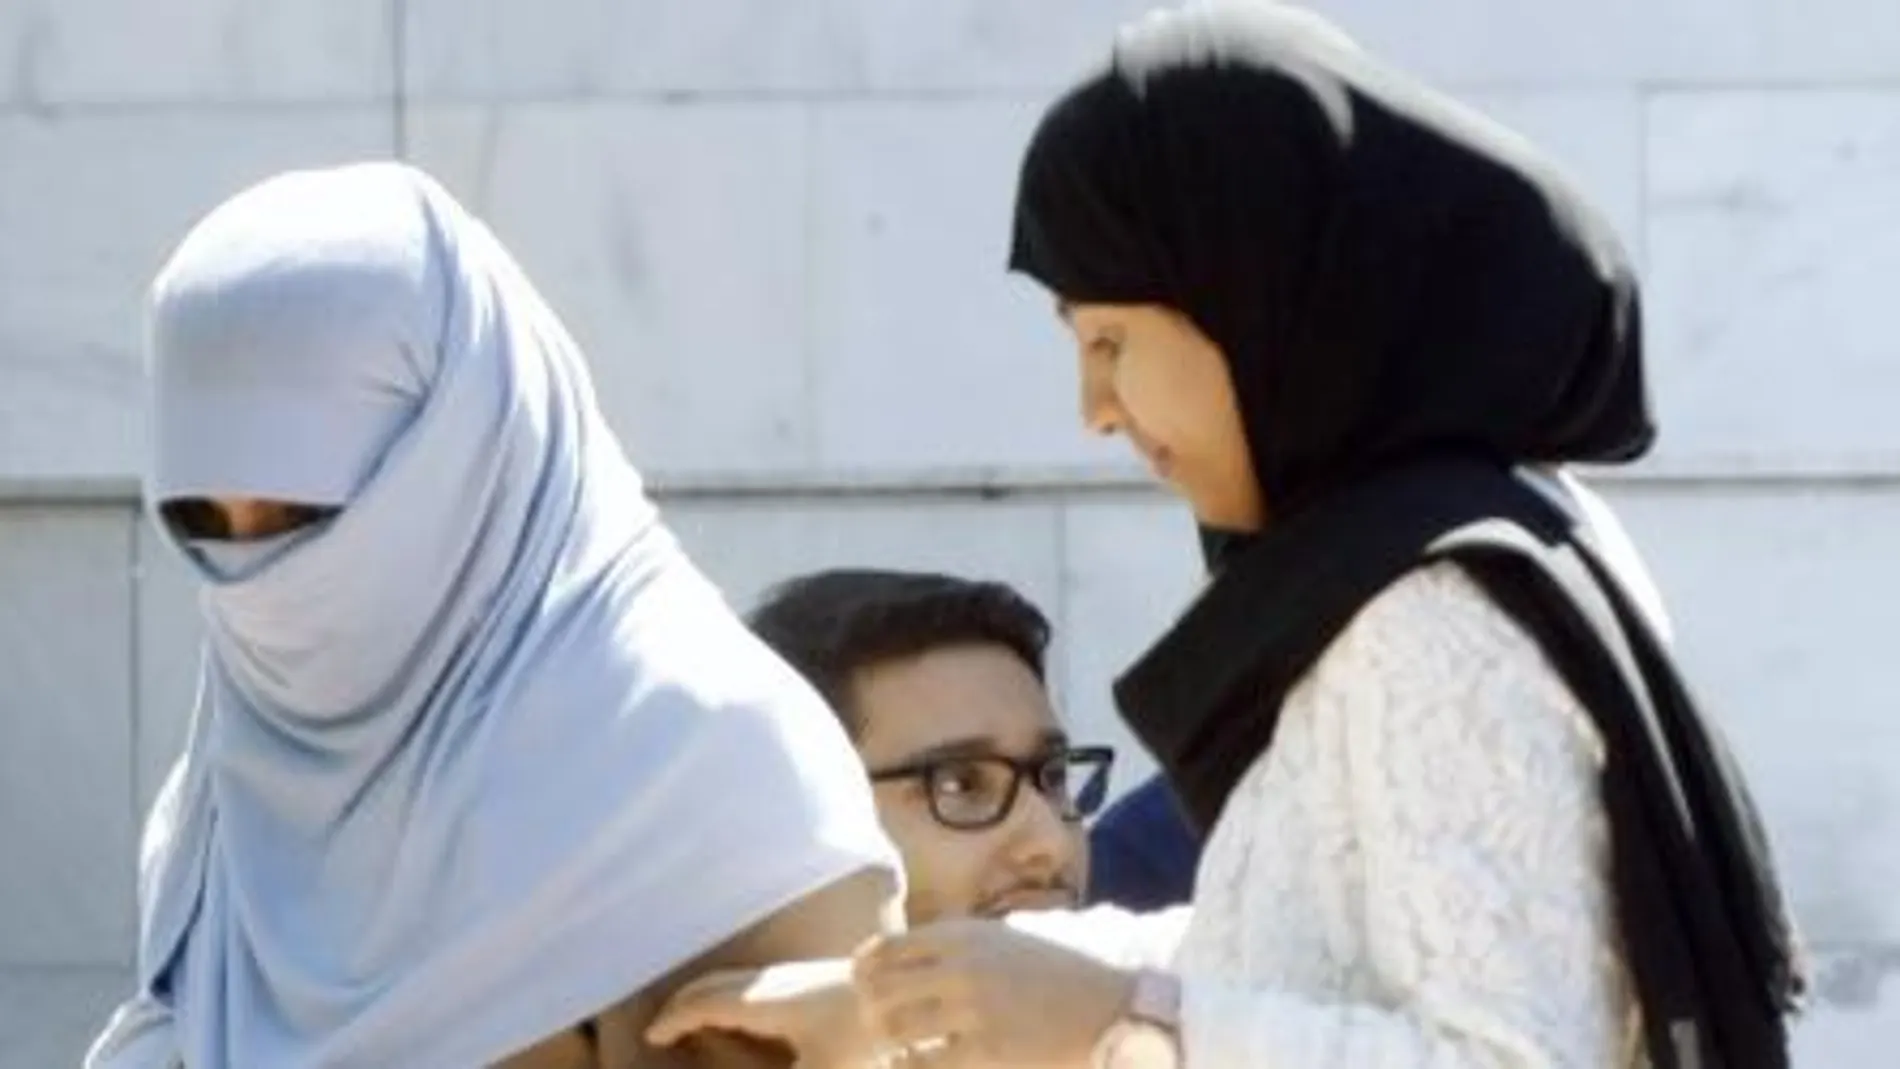 Una mujer porta un niqab en una mezquita de Madrid